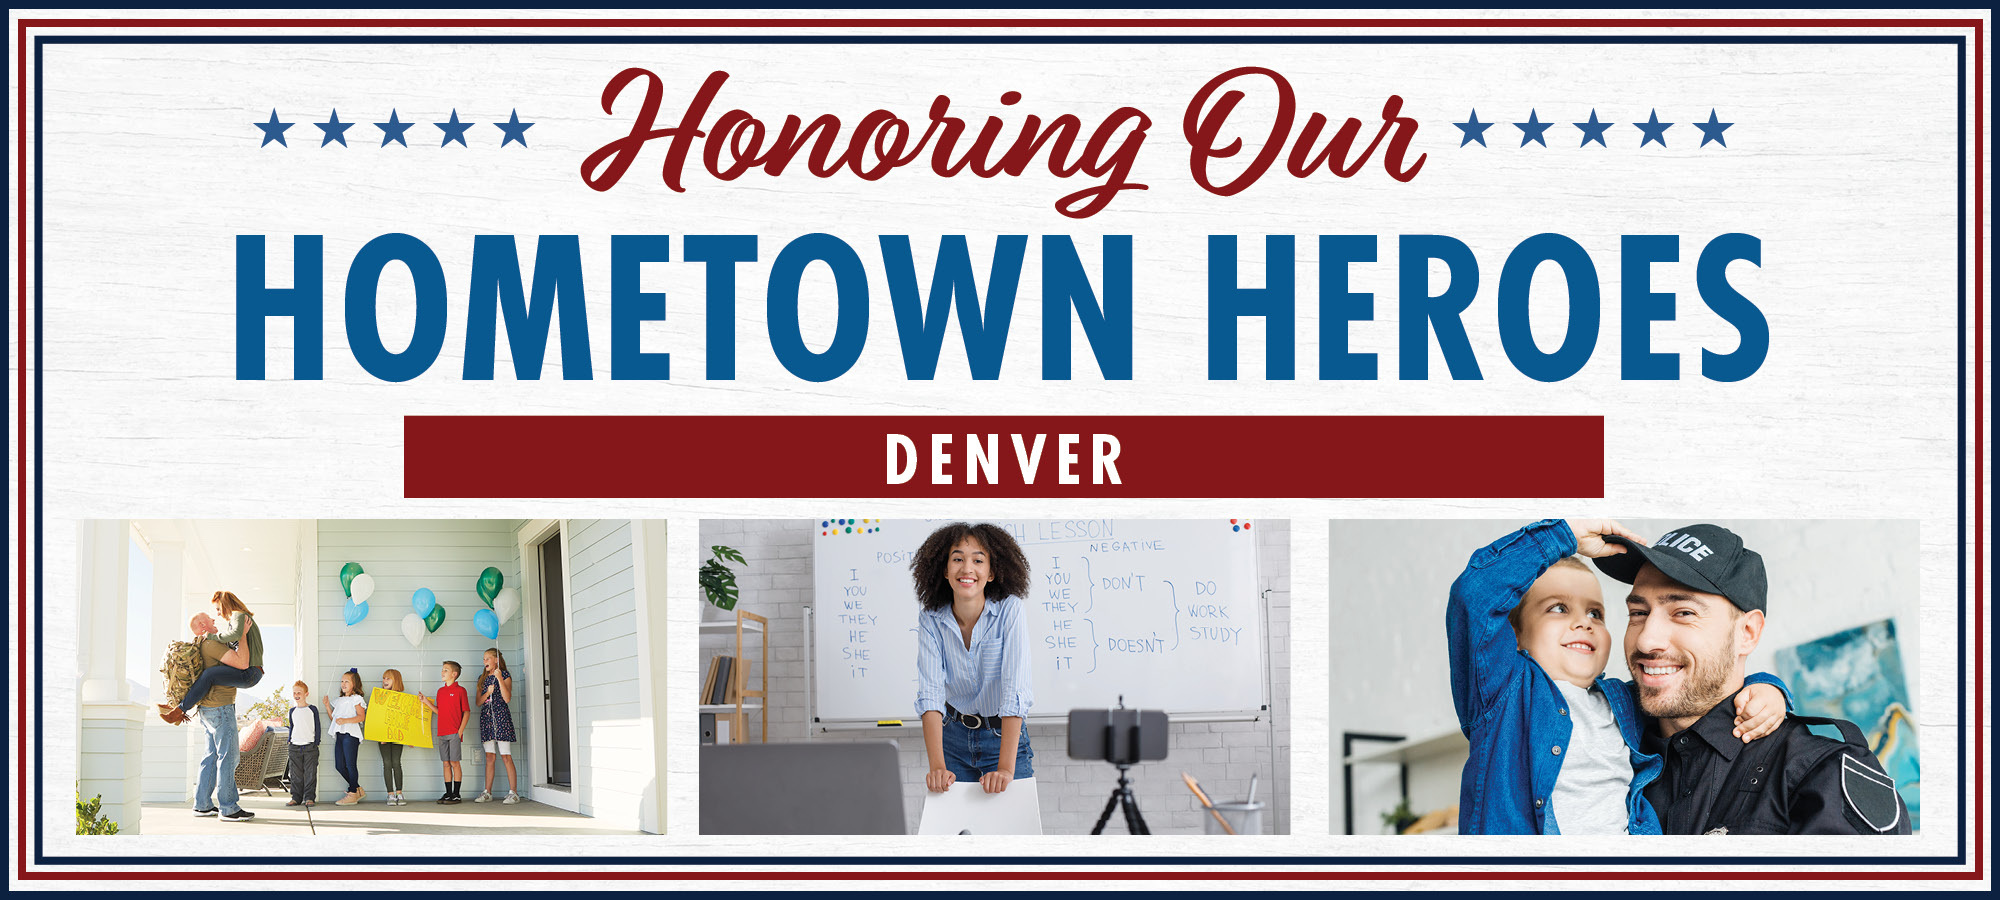 Salute to Hometown Heroes in Denver  